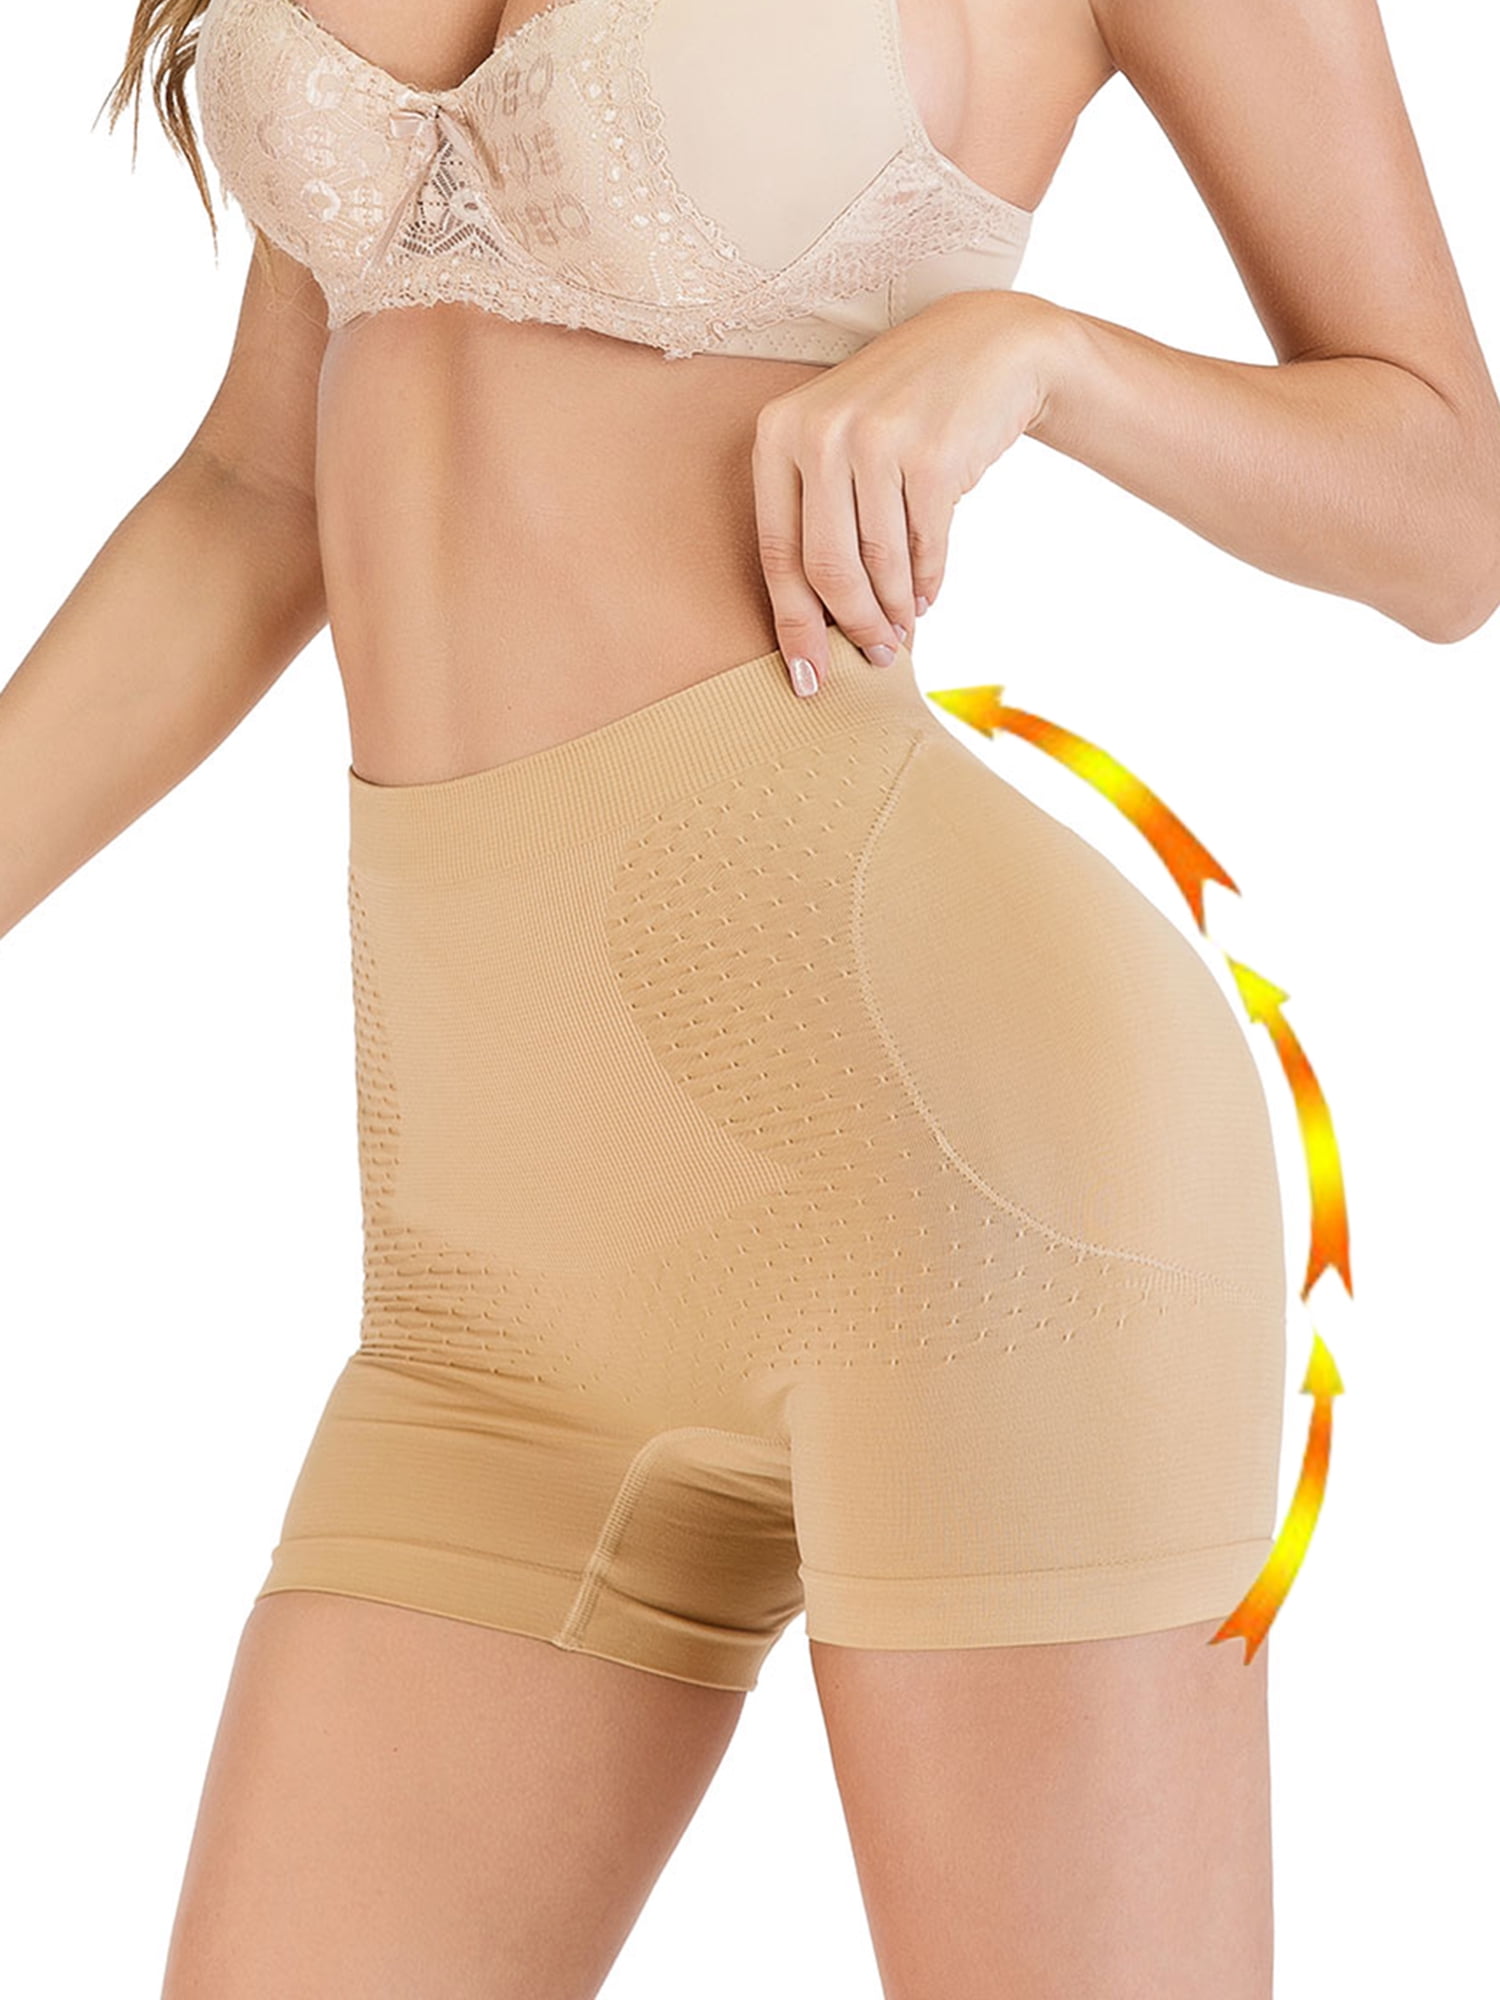 Hioffer Womens Butt Lifter Padded Hip Enhancer Shapewear Control Panties Underwear